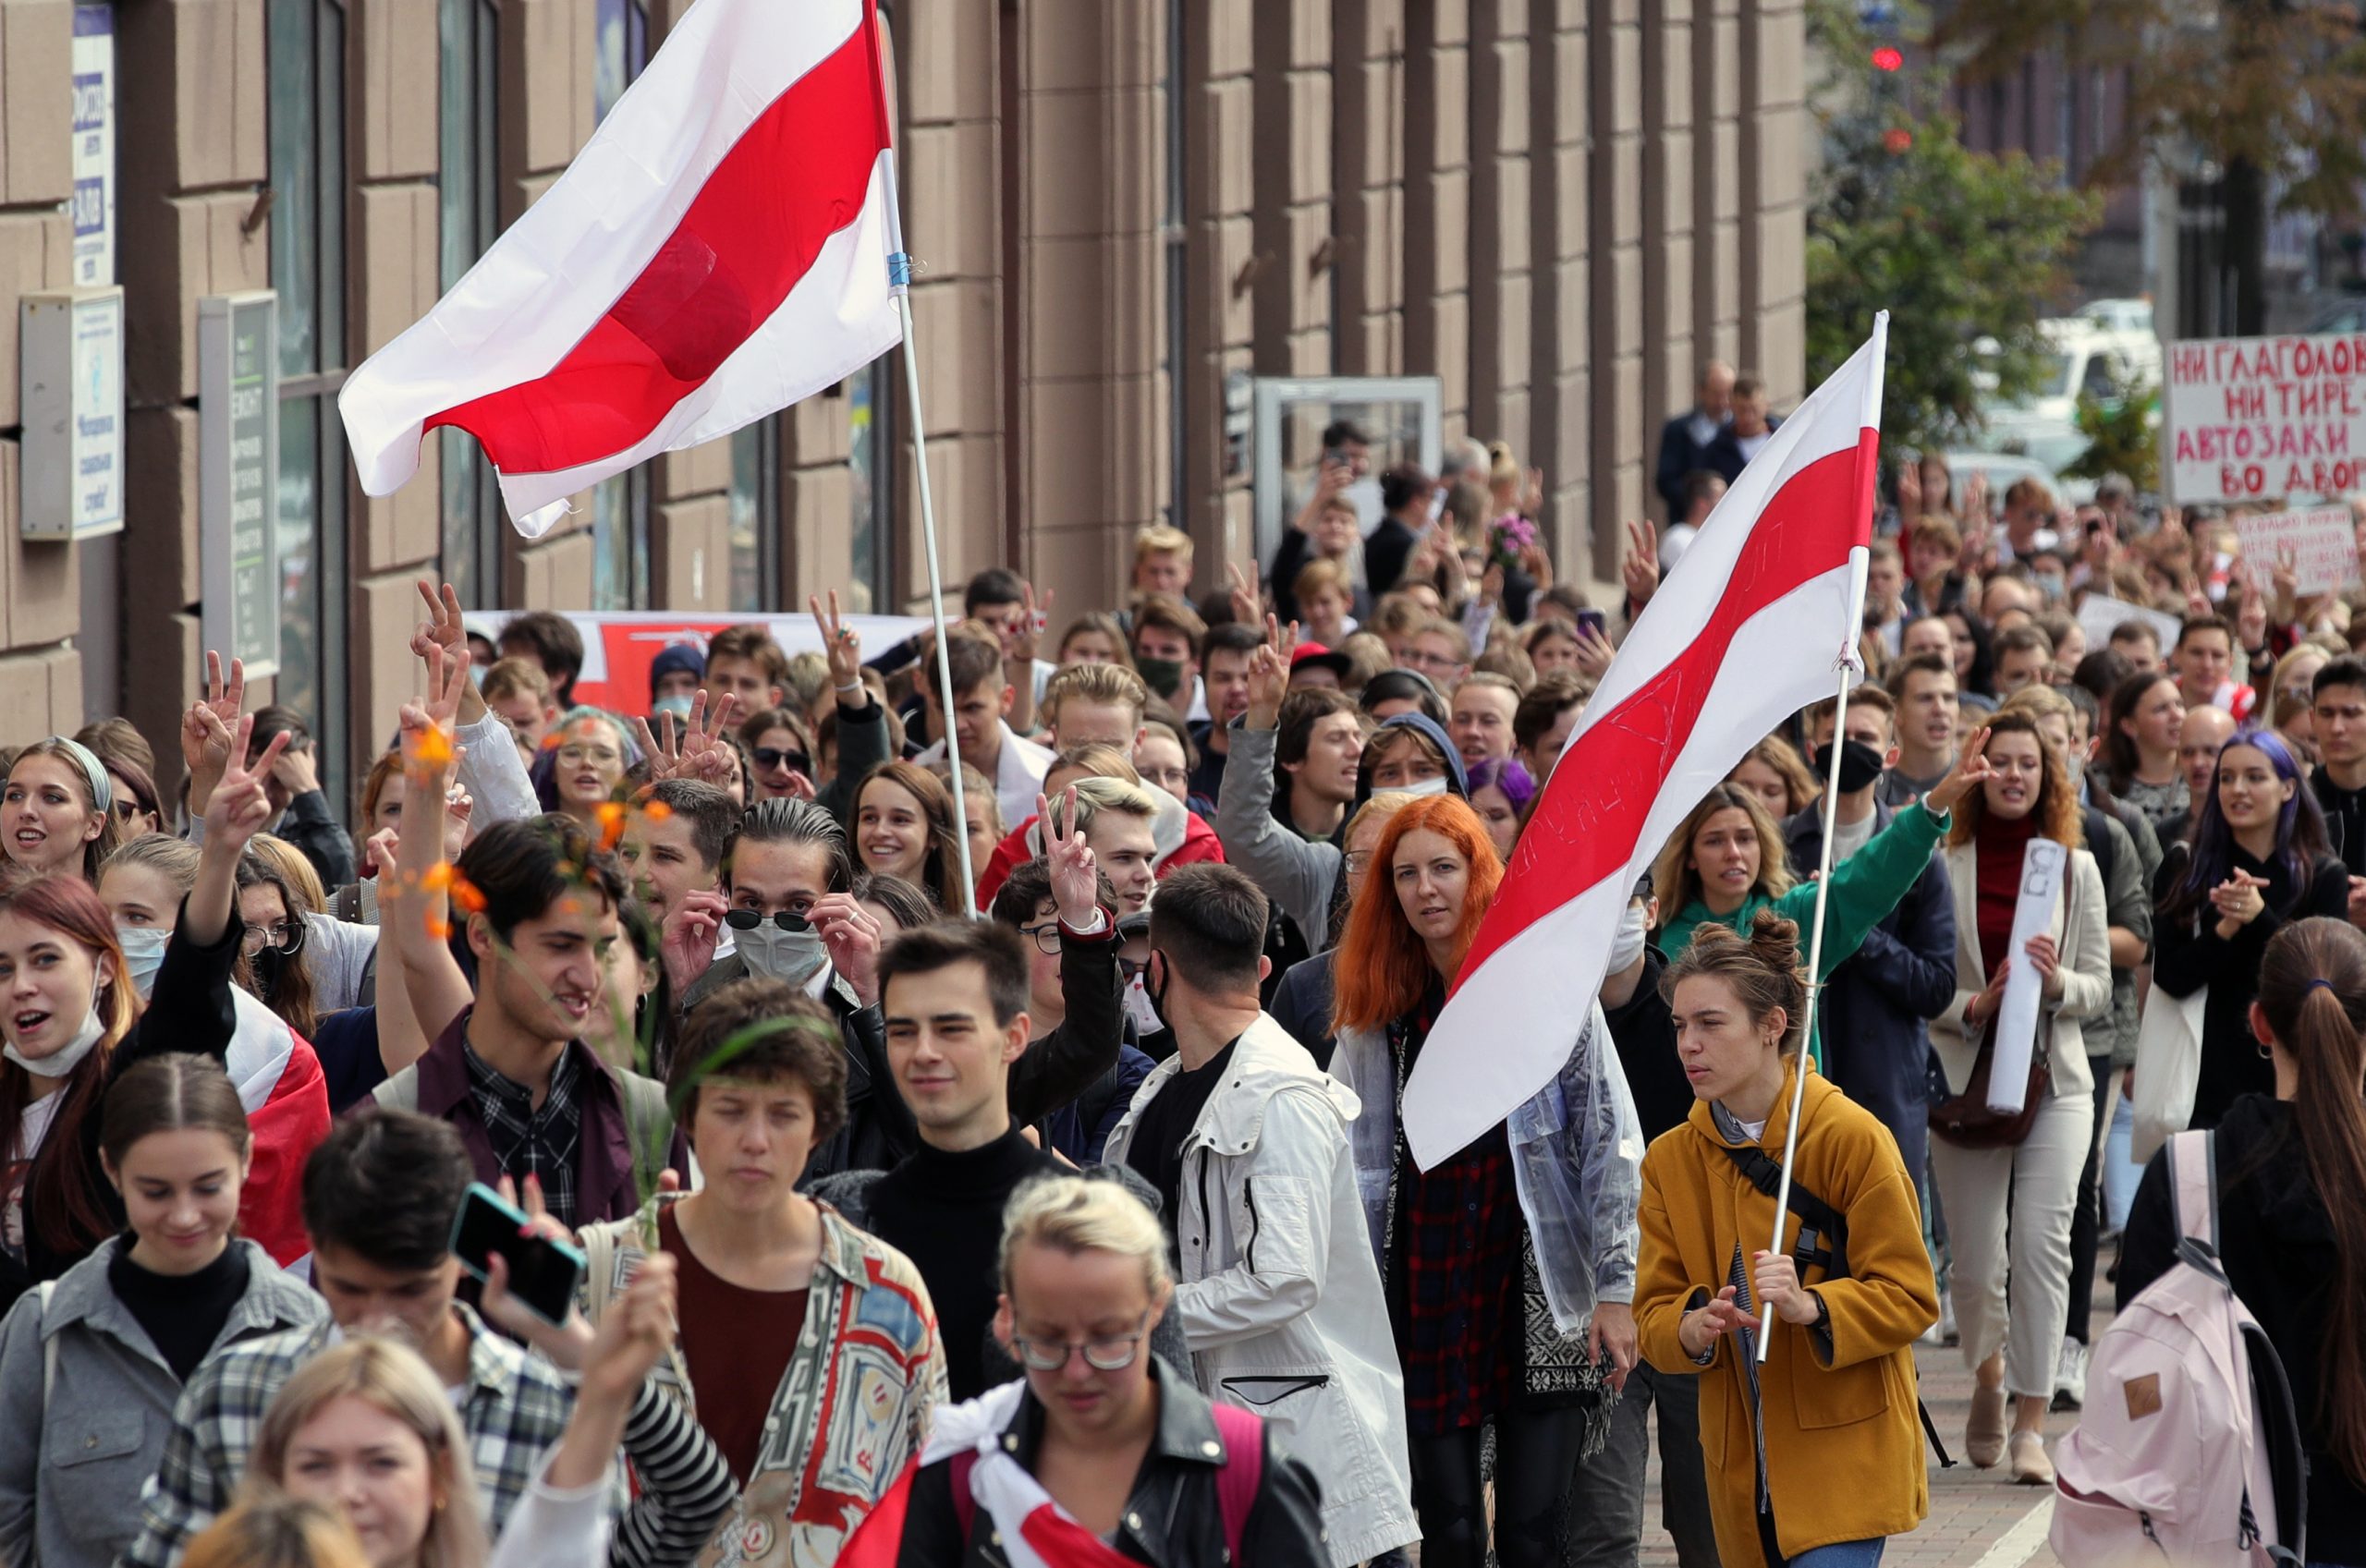 Сотни студентов вышли в День знаний на улицы Минска.Фото Sergei Bobylev/TASS/Scanpix/Leta